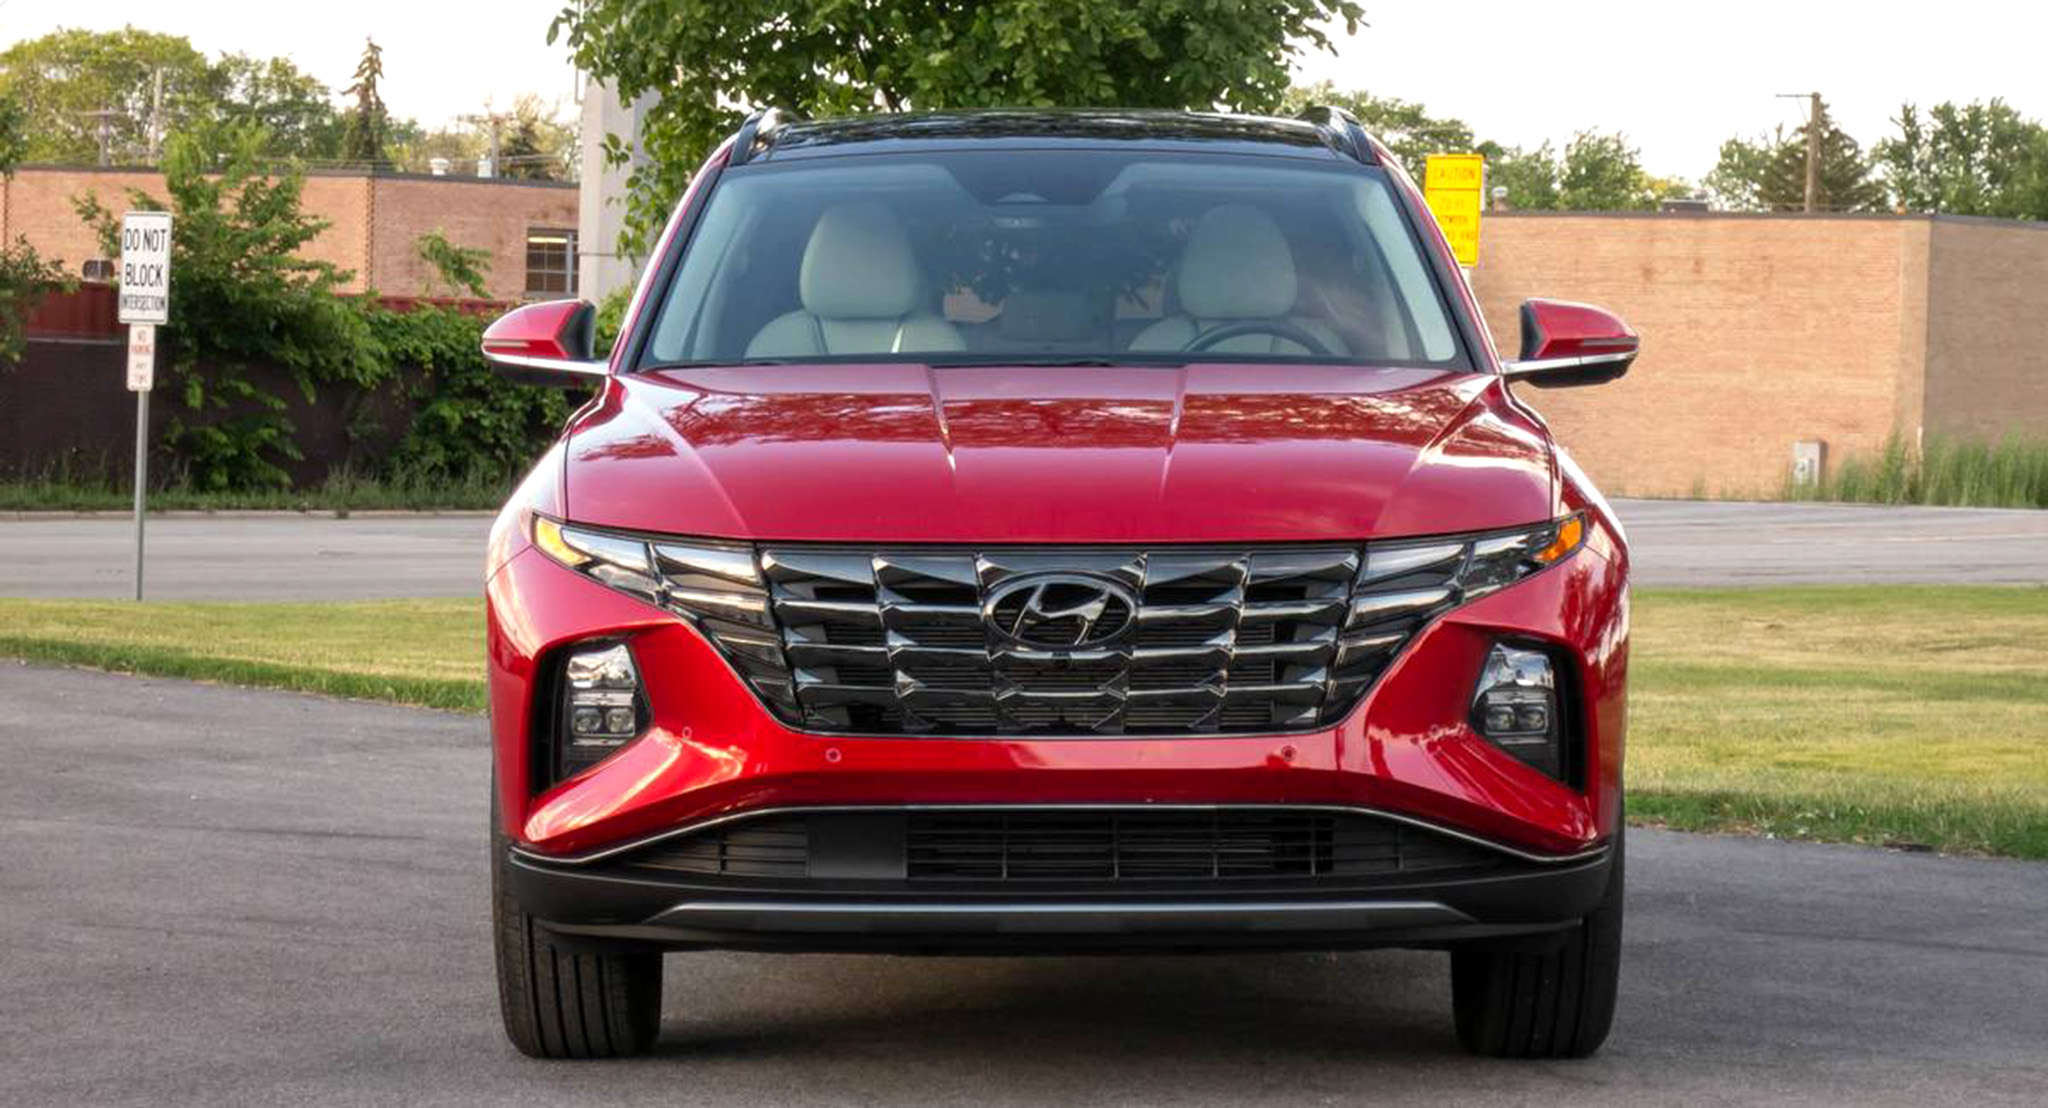 Hyundai Tucson 2022 dự kiến ra mắt tại Việt Nam trong tháng 1/2022 hyundai-tucson-limited-awd-2022-02-exterior-front-red.jpeg